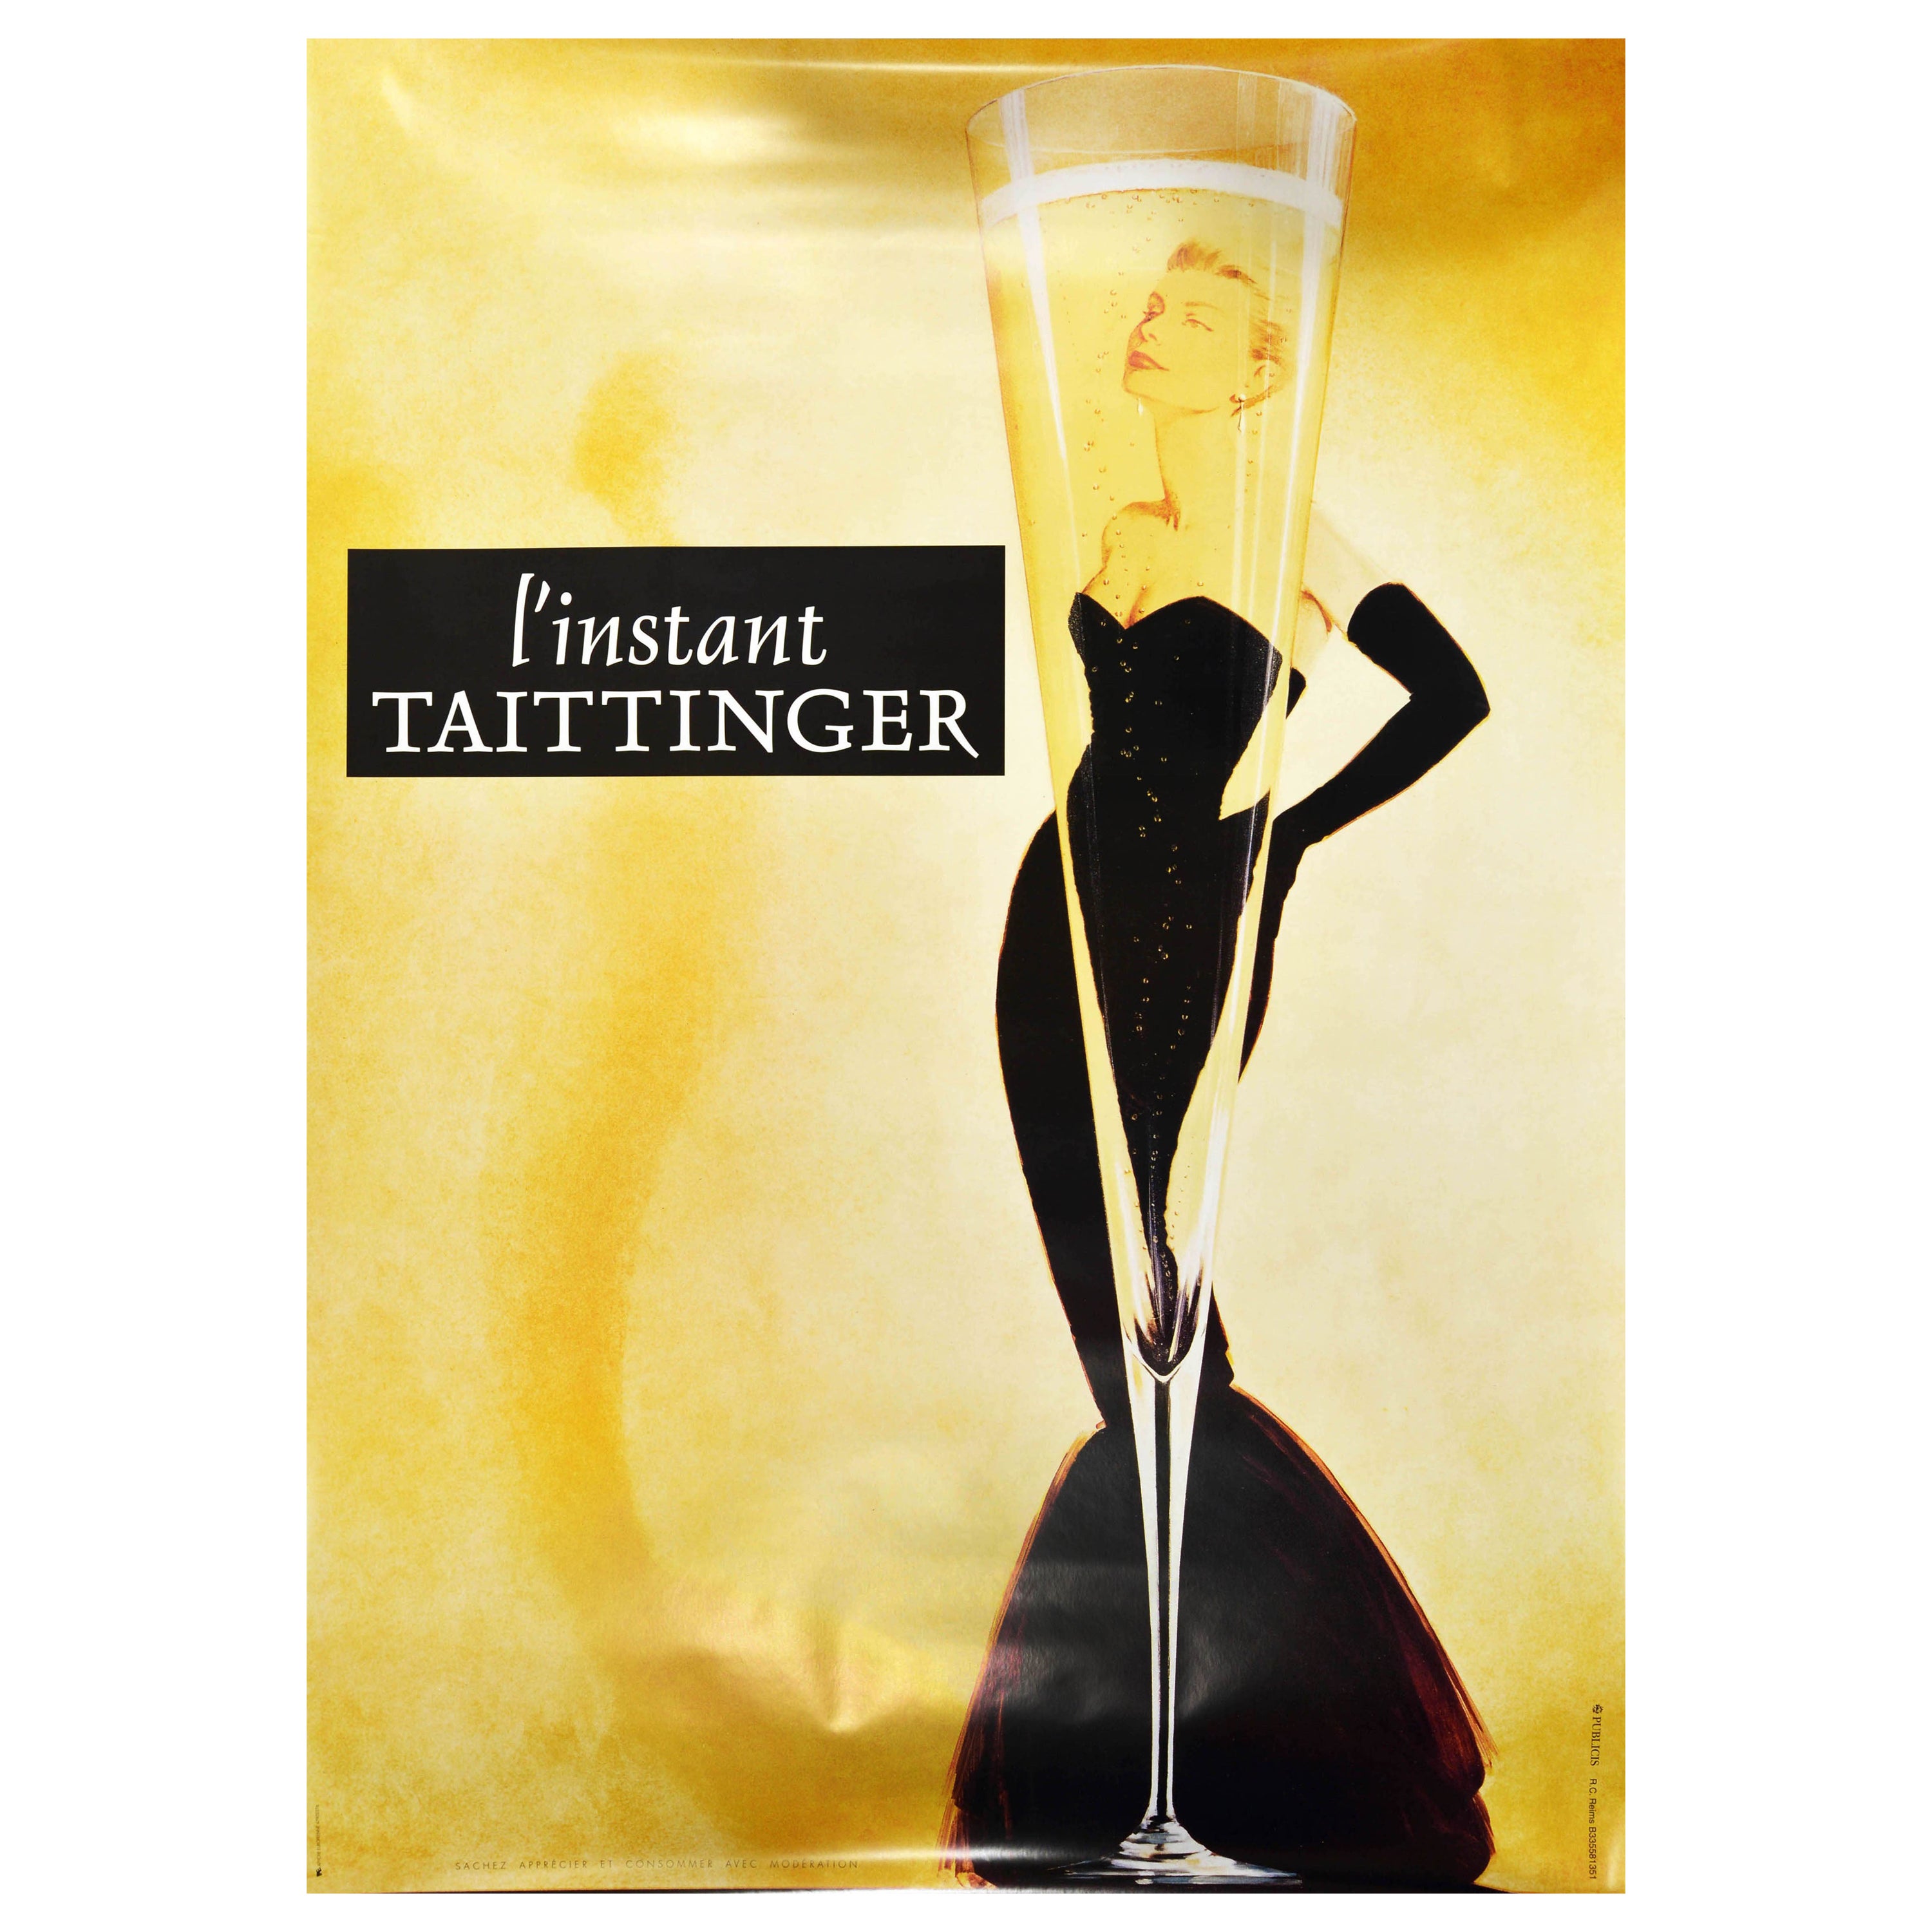 Original Vintage Drink Advertising Poster L'instant Taittinger Champagne Design For Sale